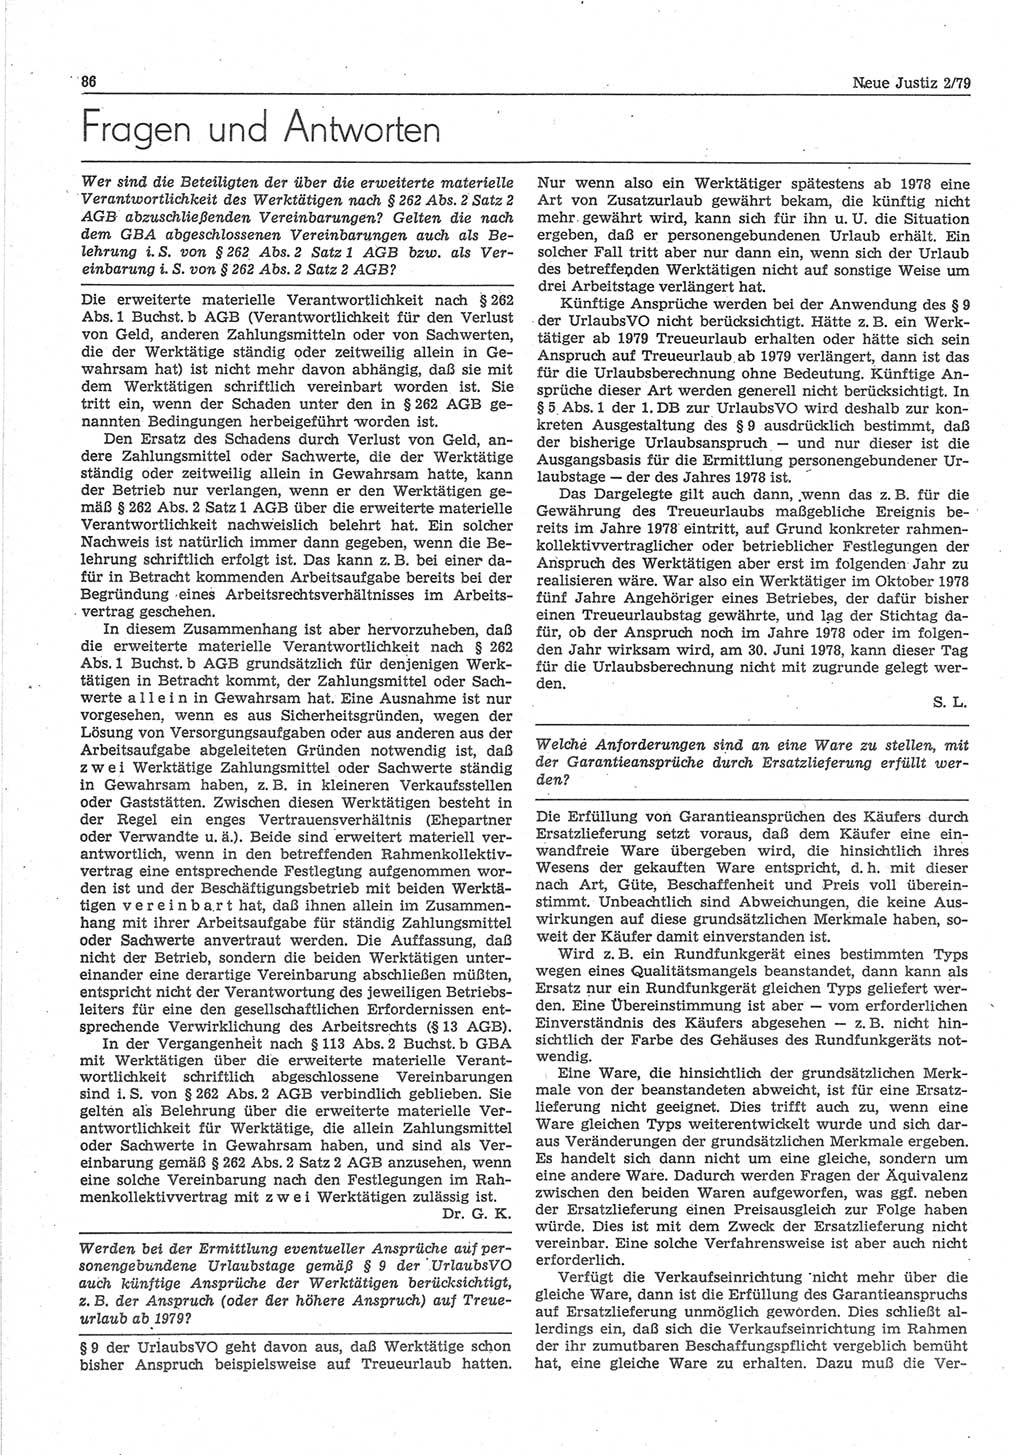 Neue Justiz (NJ), Zeitschrift für sozialistisches Recht und Gesetzlichkeit [Deutsche Demokratische Republik (DDR)], 33. Jahrgang 1979, Seite 86 (NJ DDR 1979, S. 86)